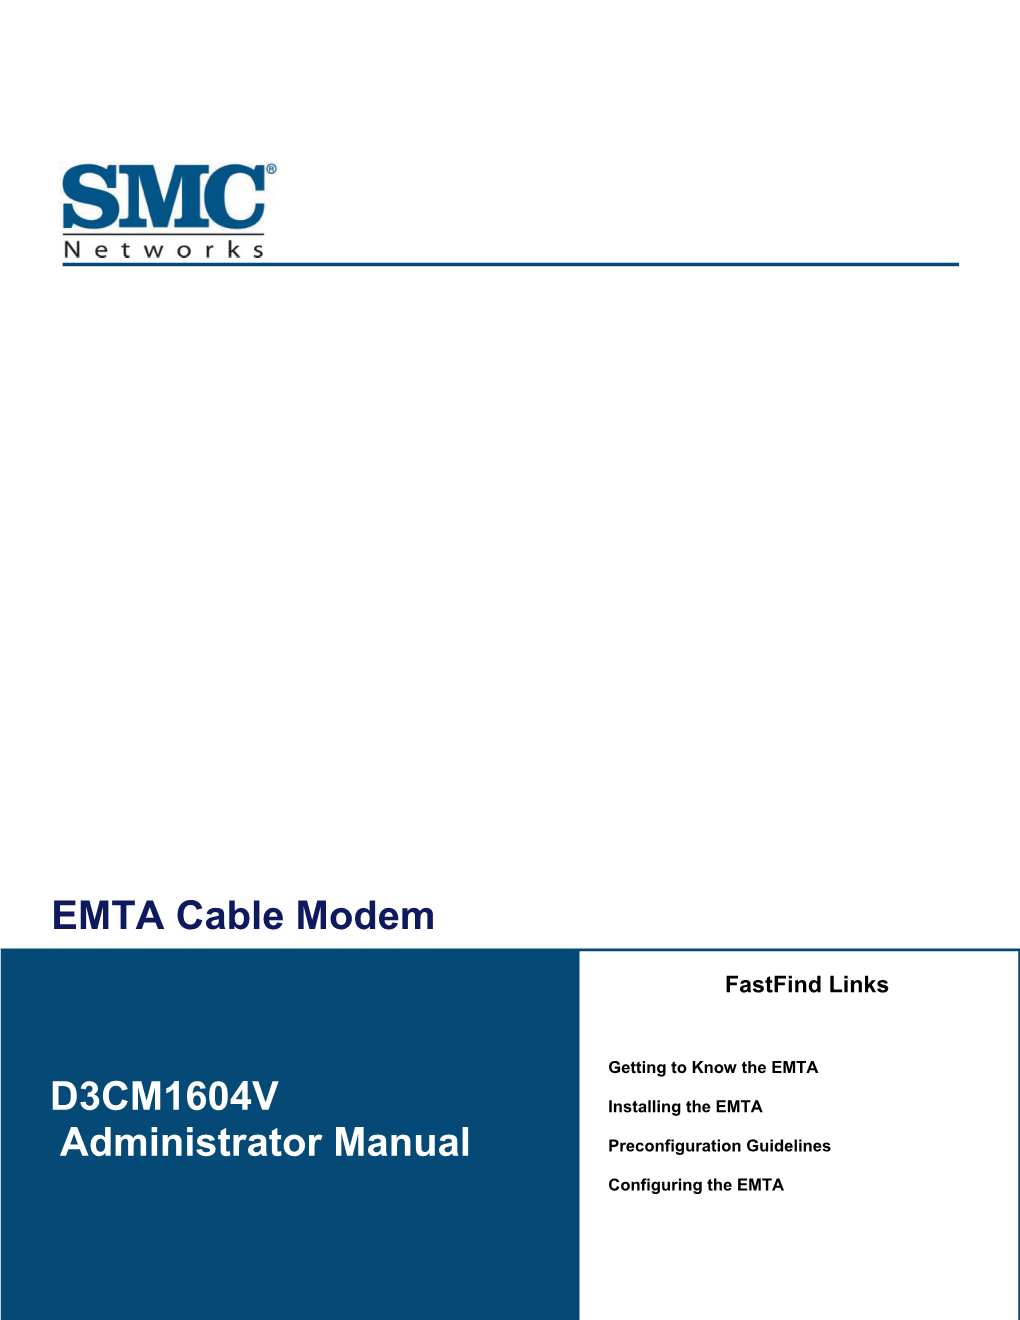 D3CM1604V EMTA Cable Modem Administrator Manual Contents